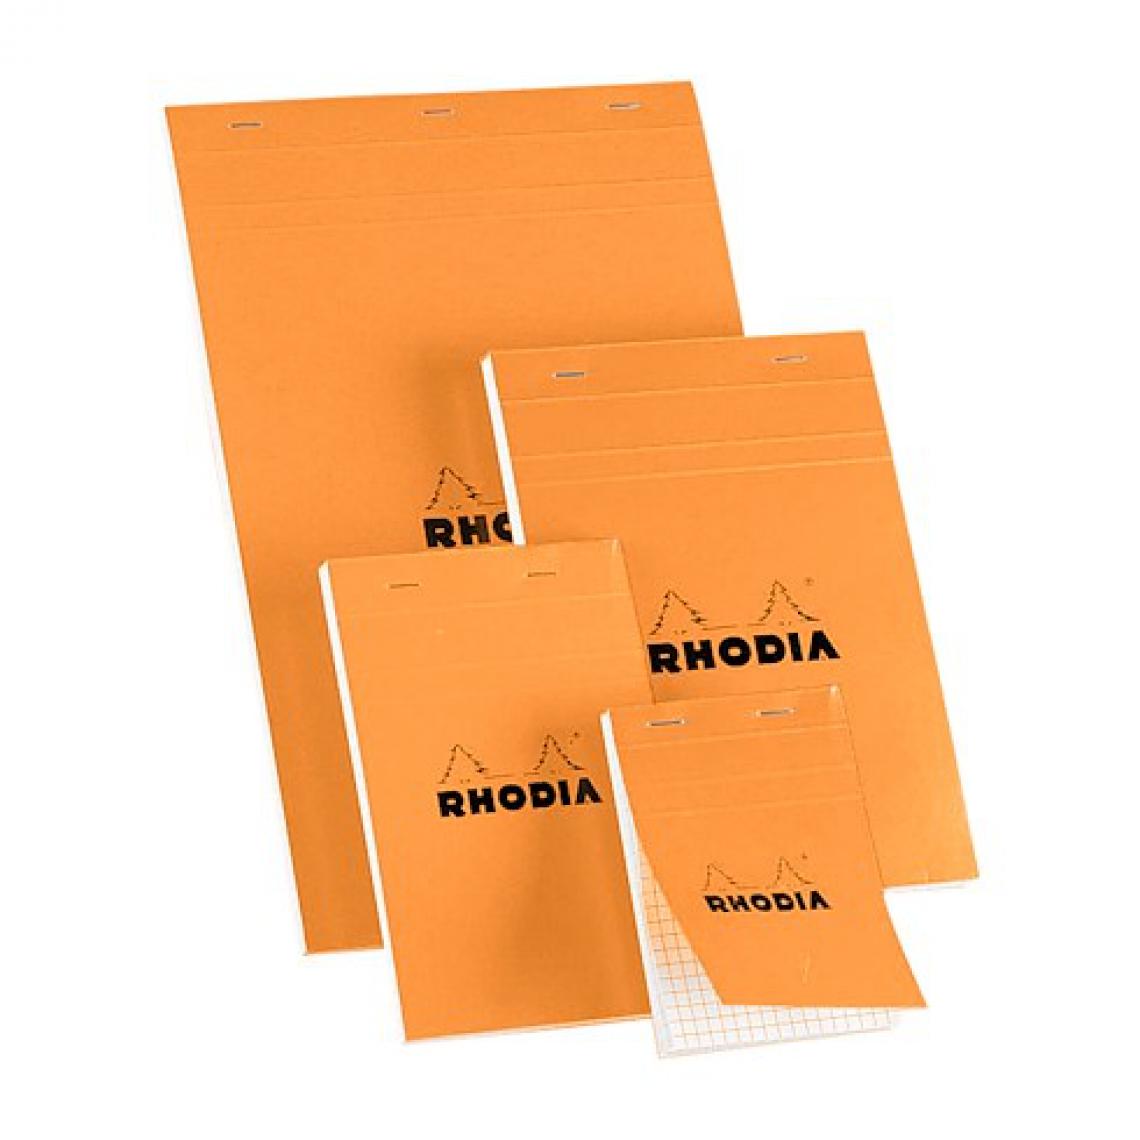 Rhodia - Bloc bureau Rhodia N°14 format 11 x 17 cm petits carreaux 80 feuilles - Lot de 5 - Accessoires Bureau